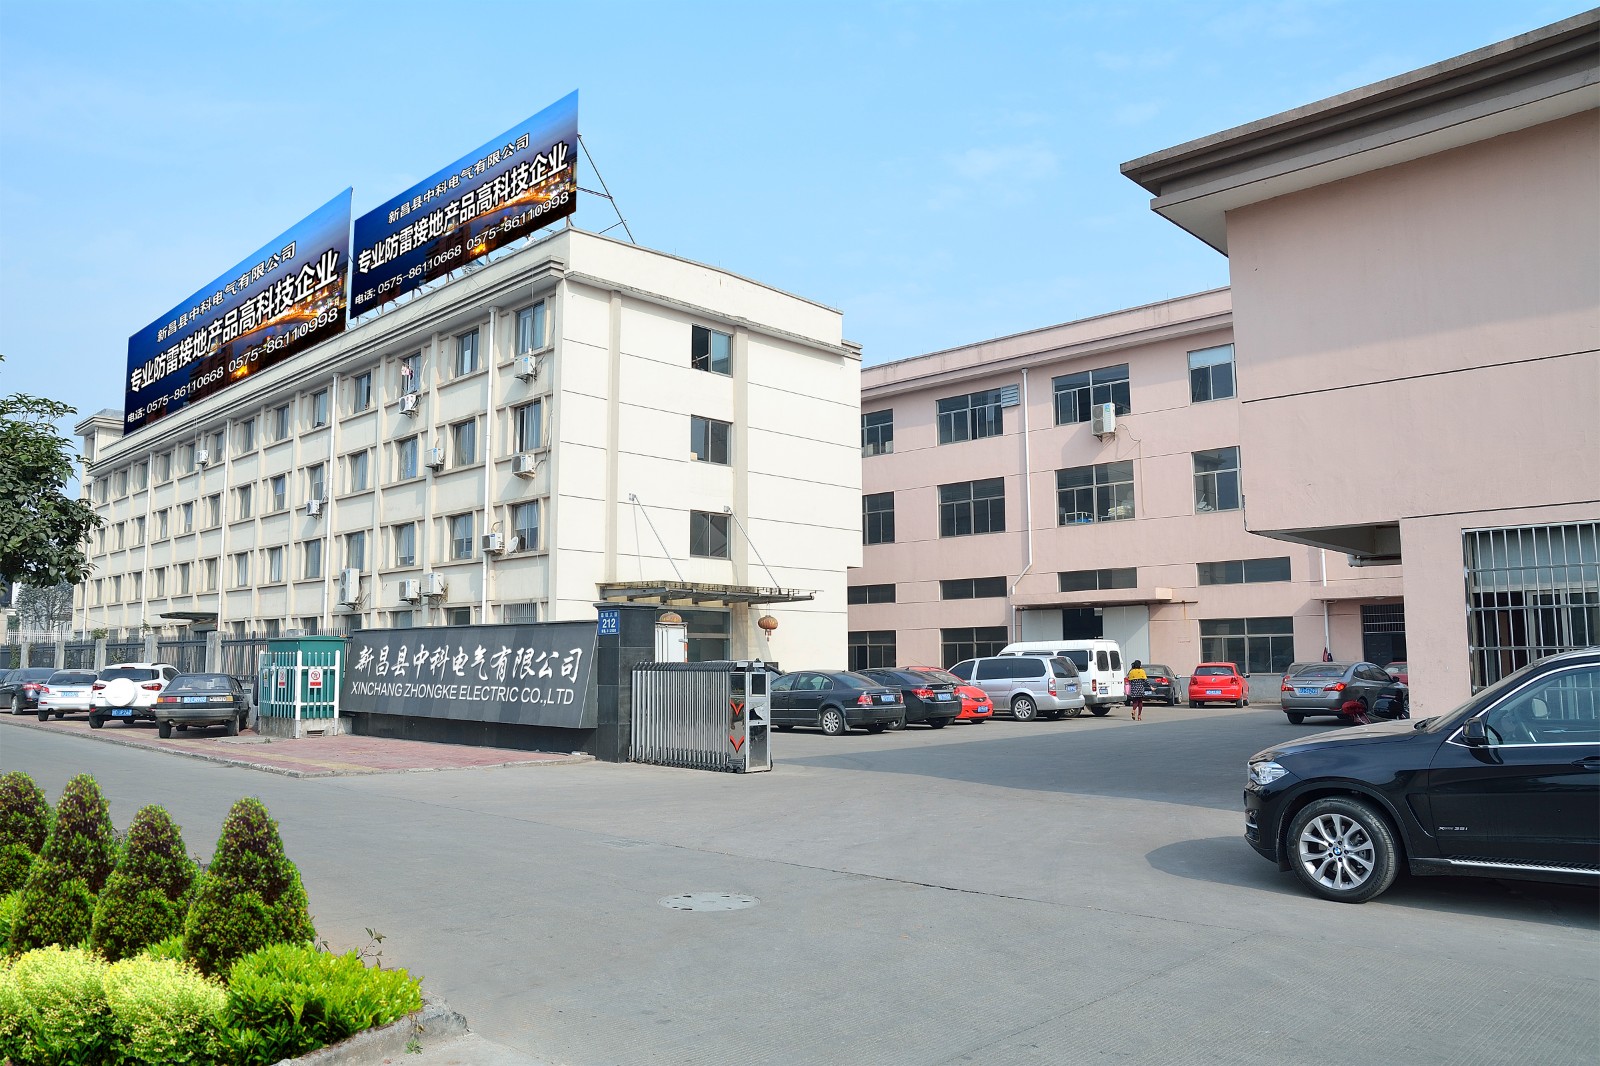 Xinchang Zhongke Electric Co.,Ltd.